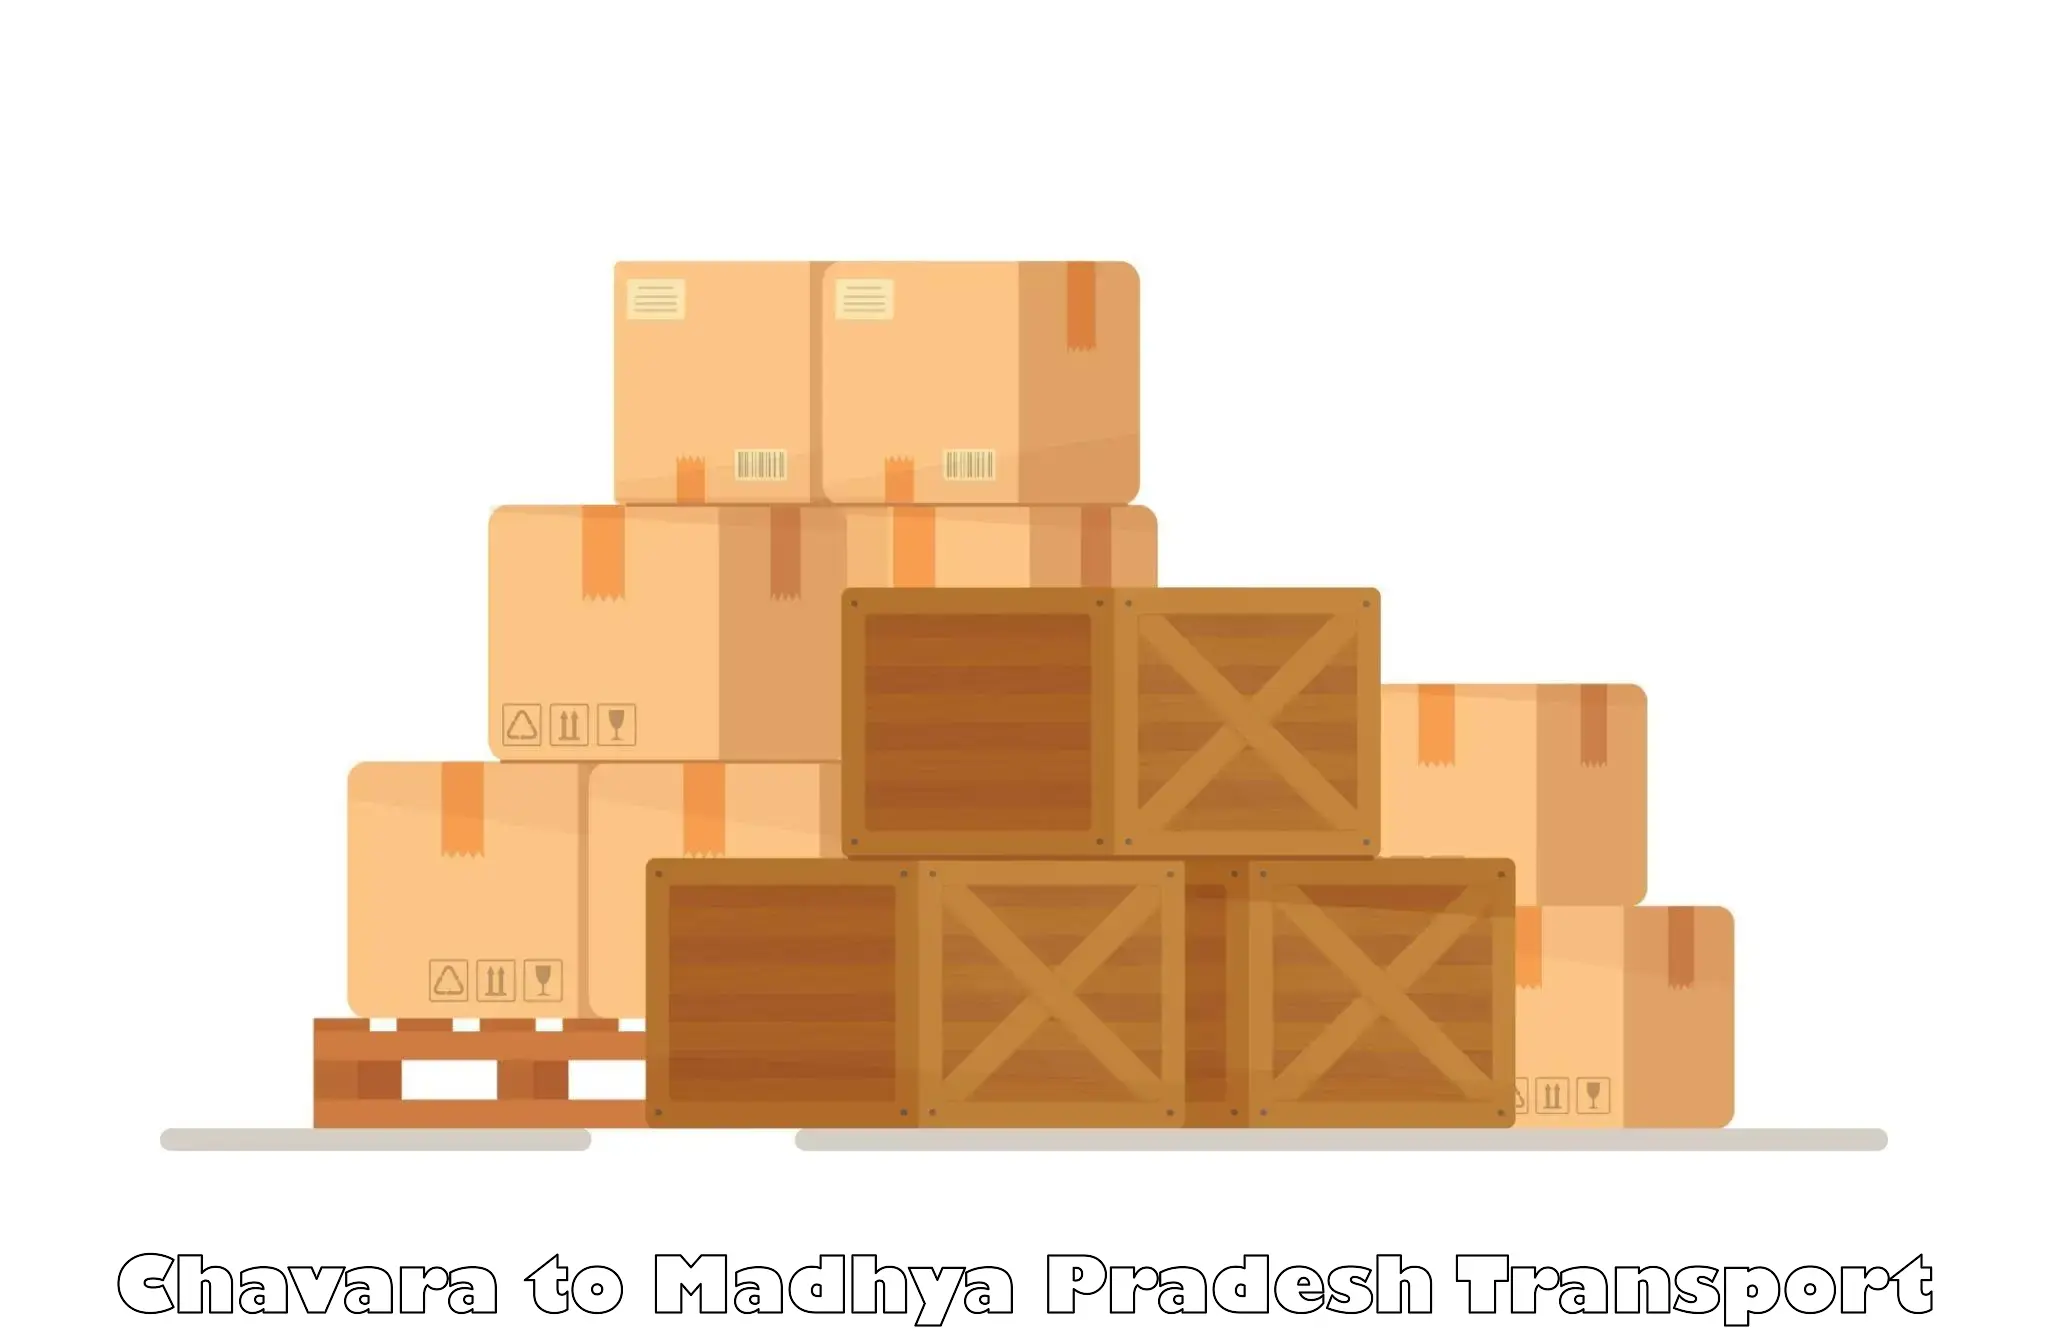 Transportation services Chavara to Madhya Pradesh